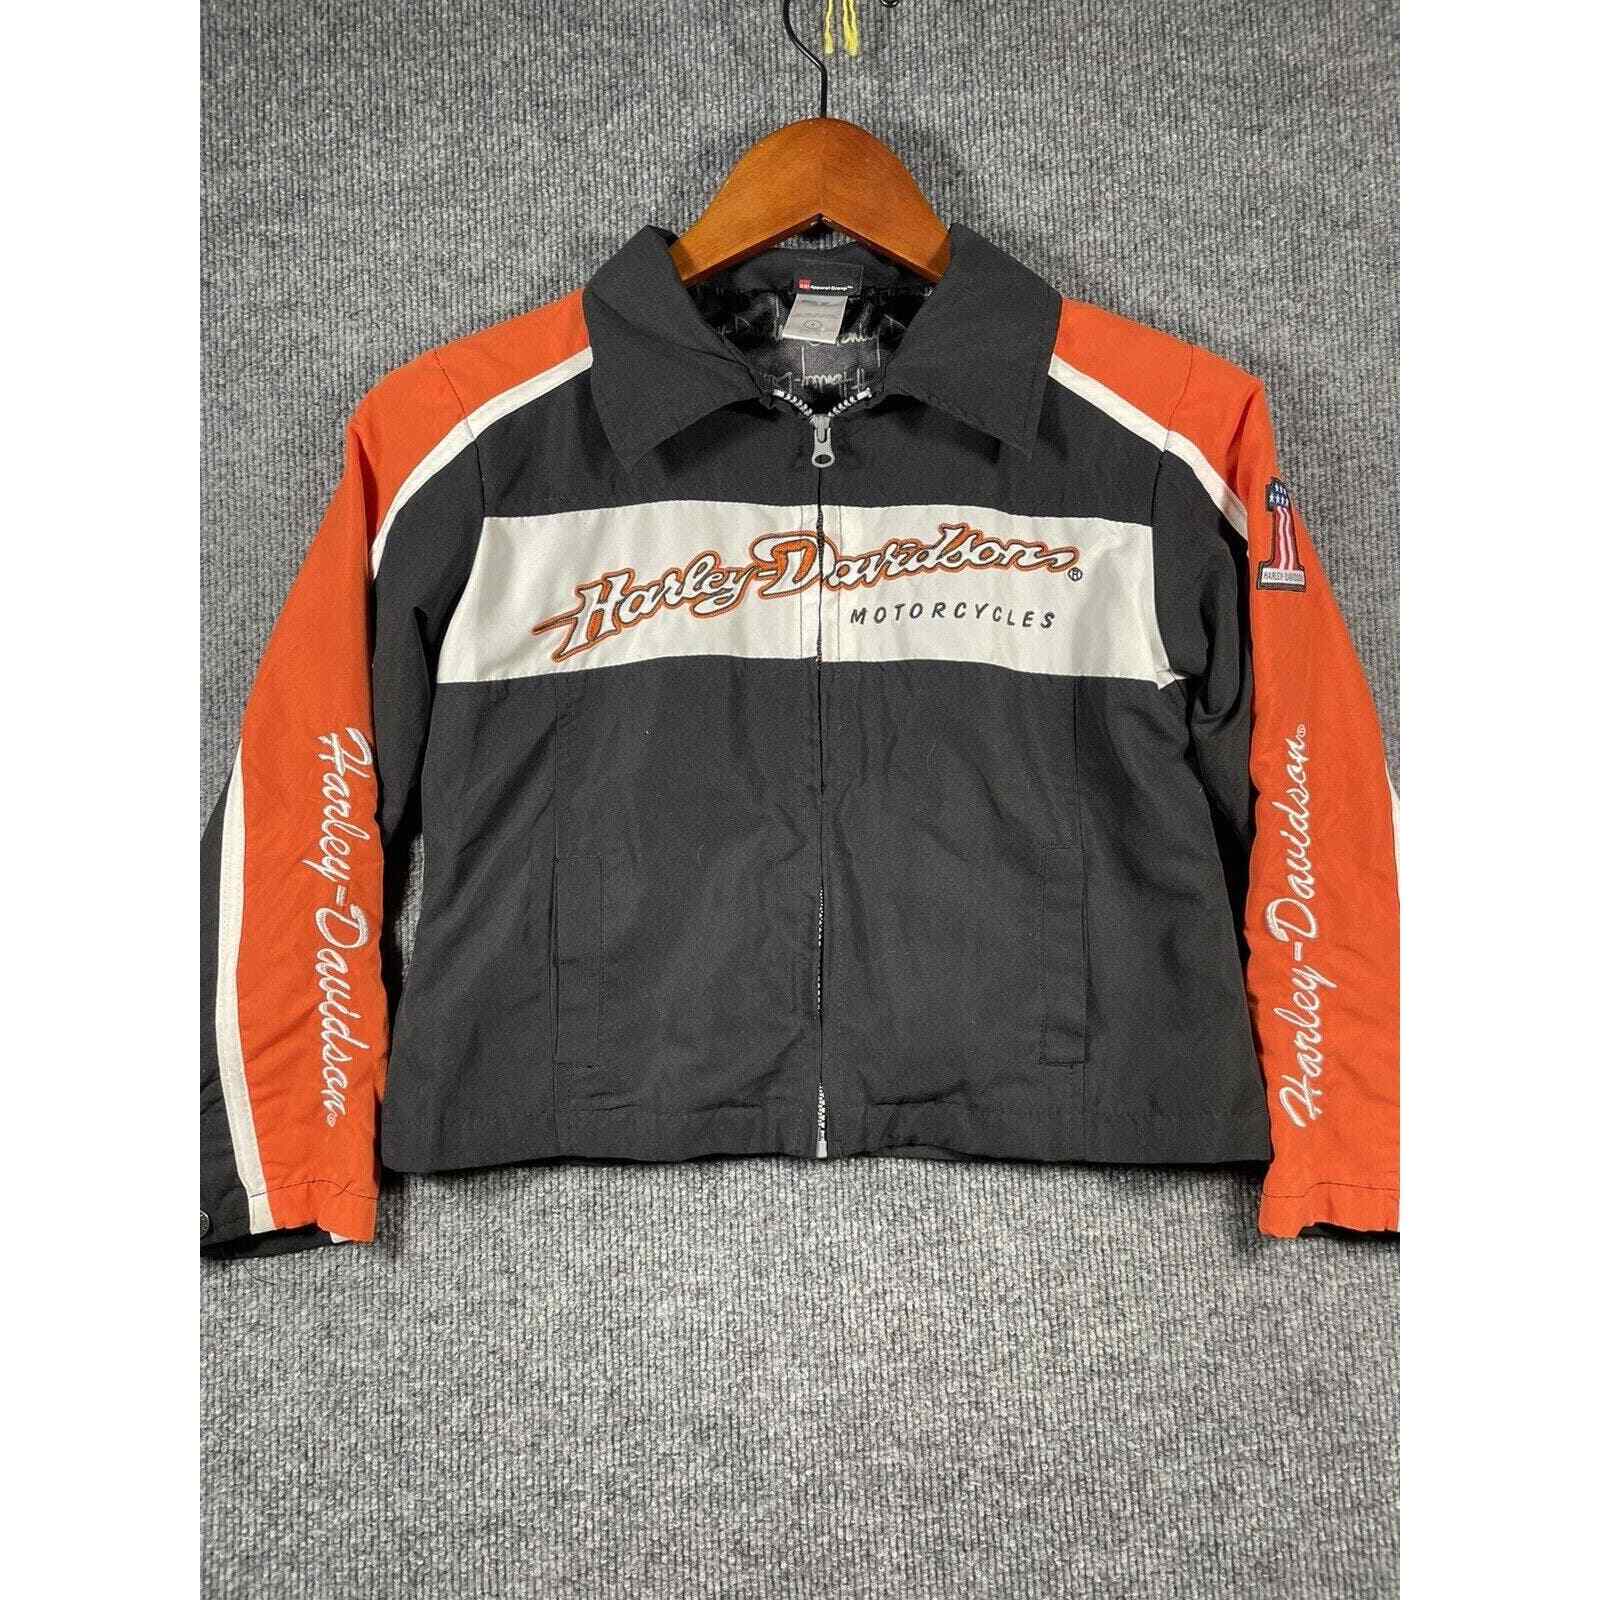 Harley Davidson Jacket Youth 6 Orange/Black Full Zip Embroidered Lined Biker